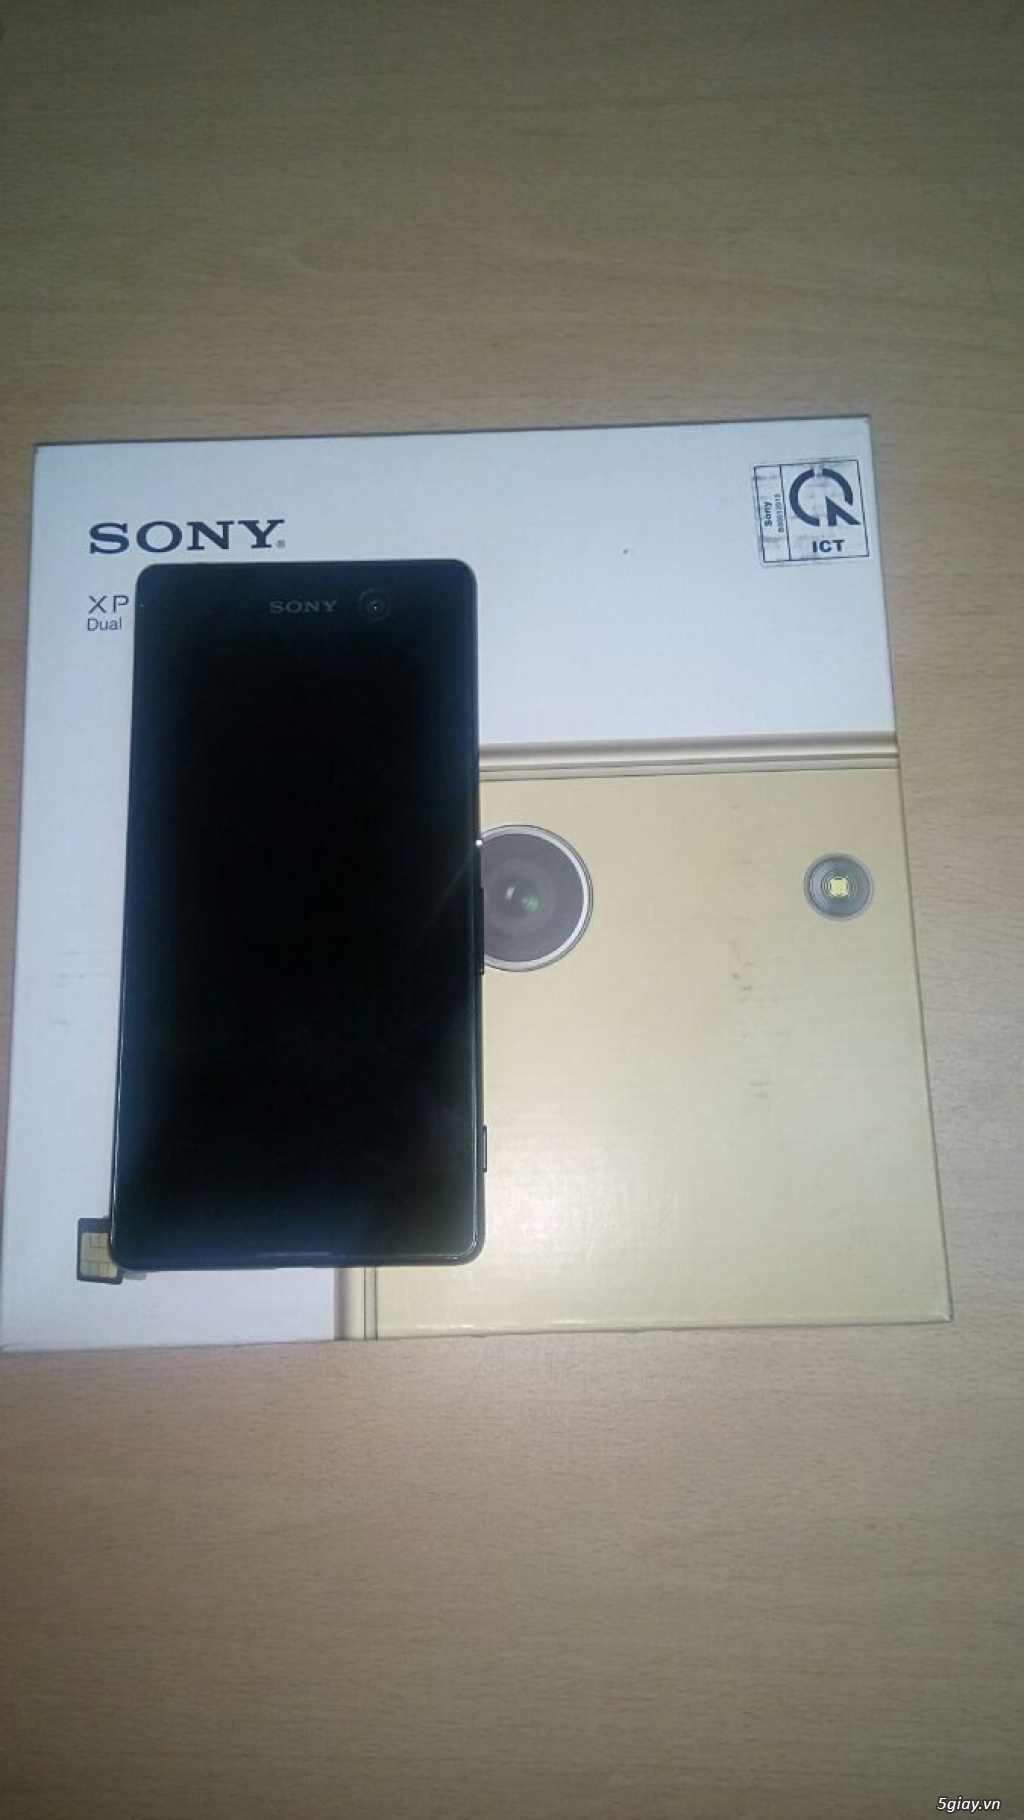 Bán Sony Xperia M5 Dual chính hãng - 1